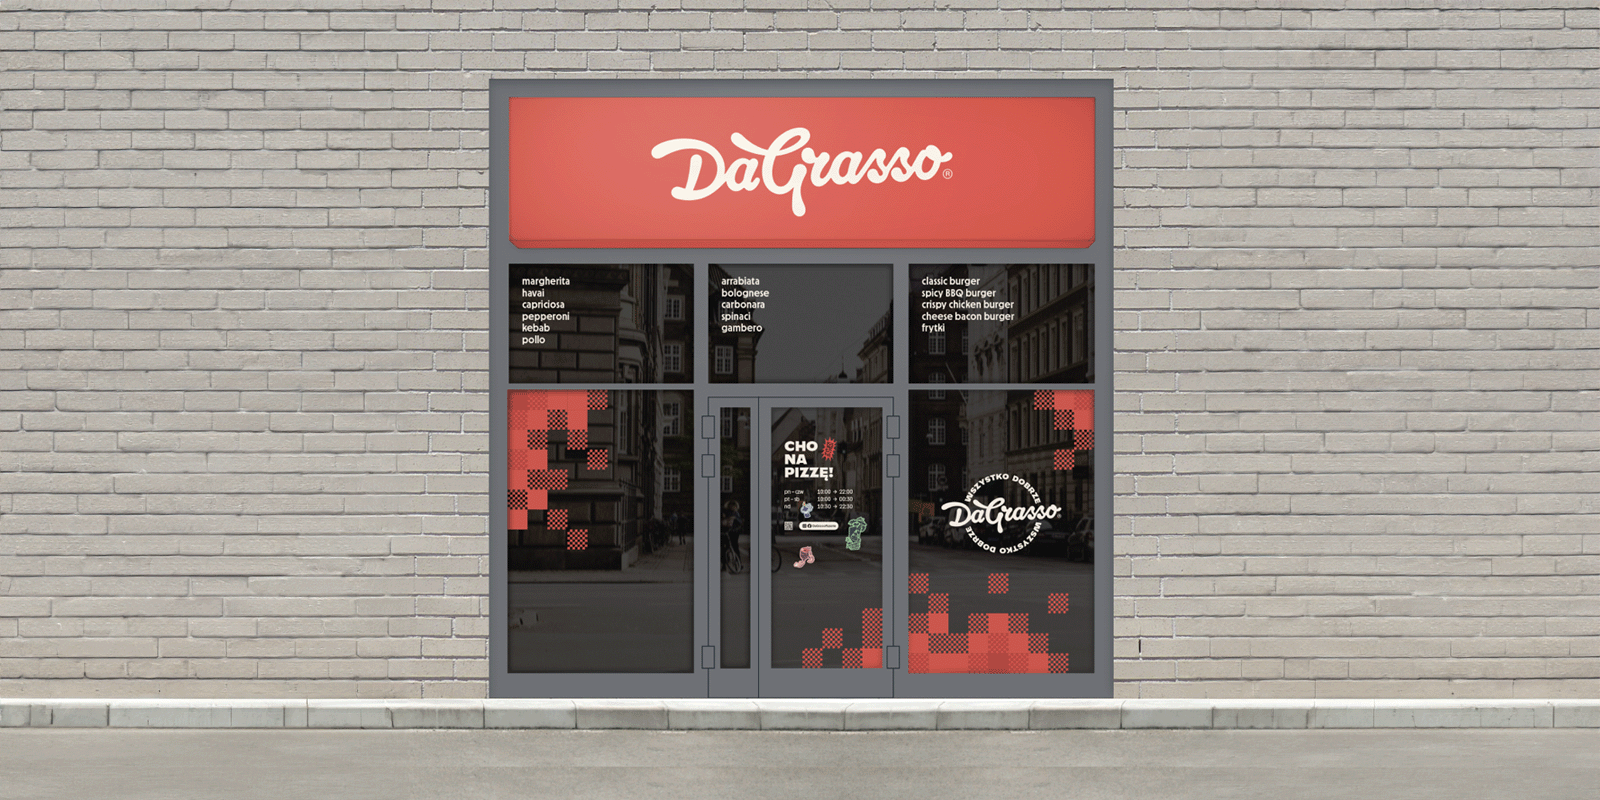 Da Grasso zmienia logo i prezentuje nowe hasło DaGrasso MEDIARUN COM DAGRASSO LOGO IDENTYFIKACJA V1